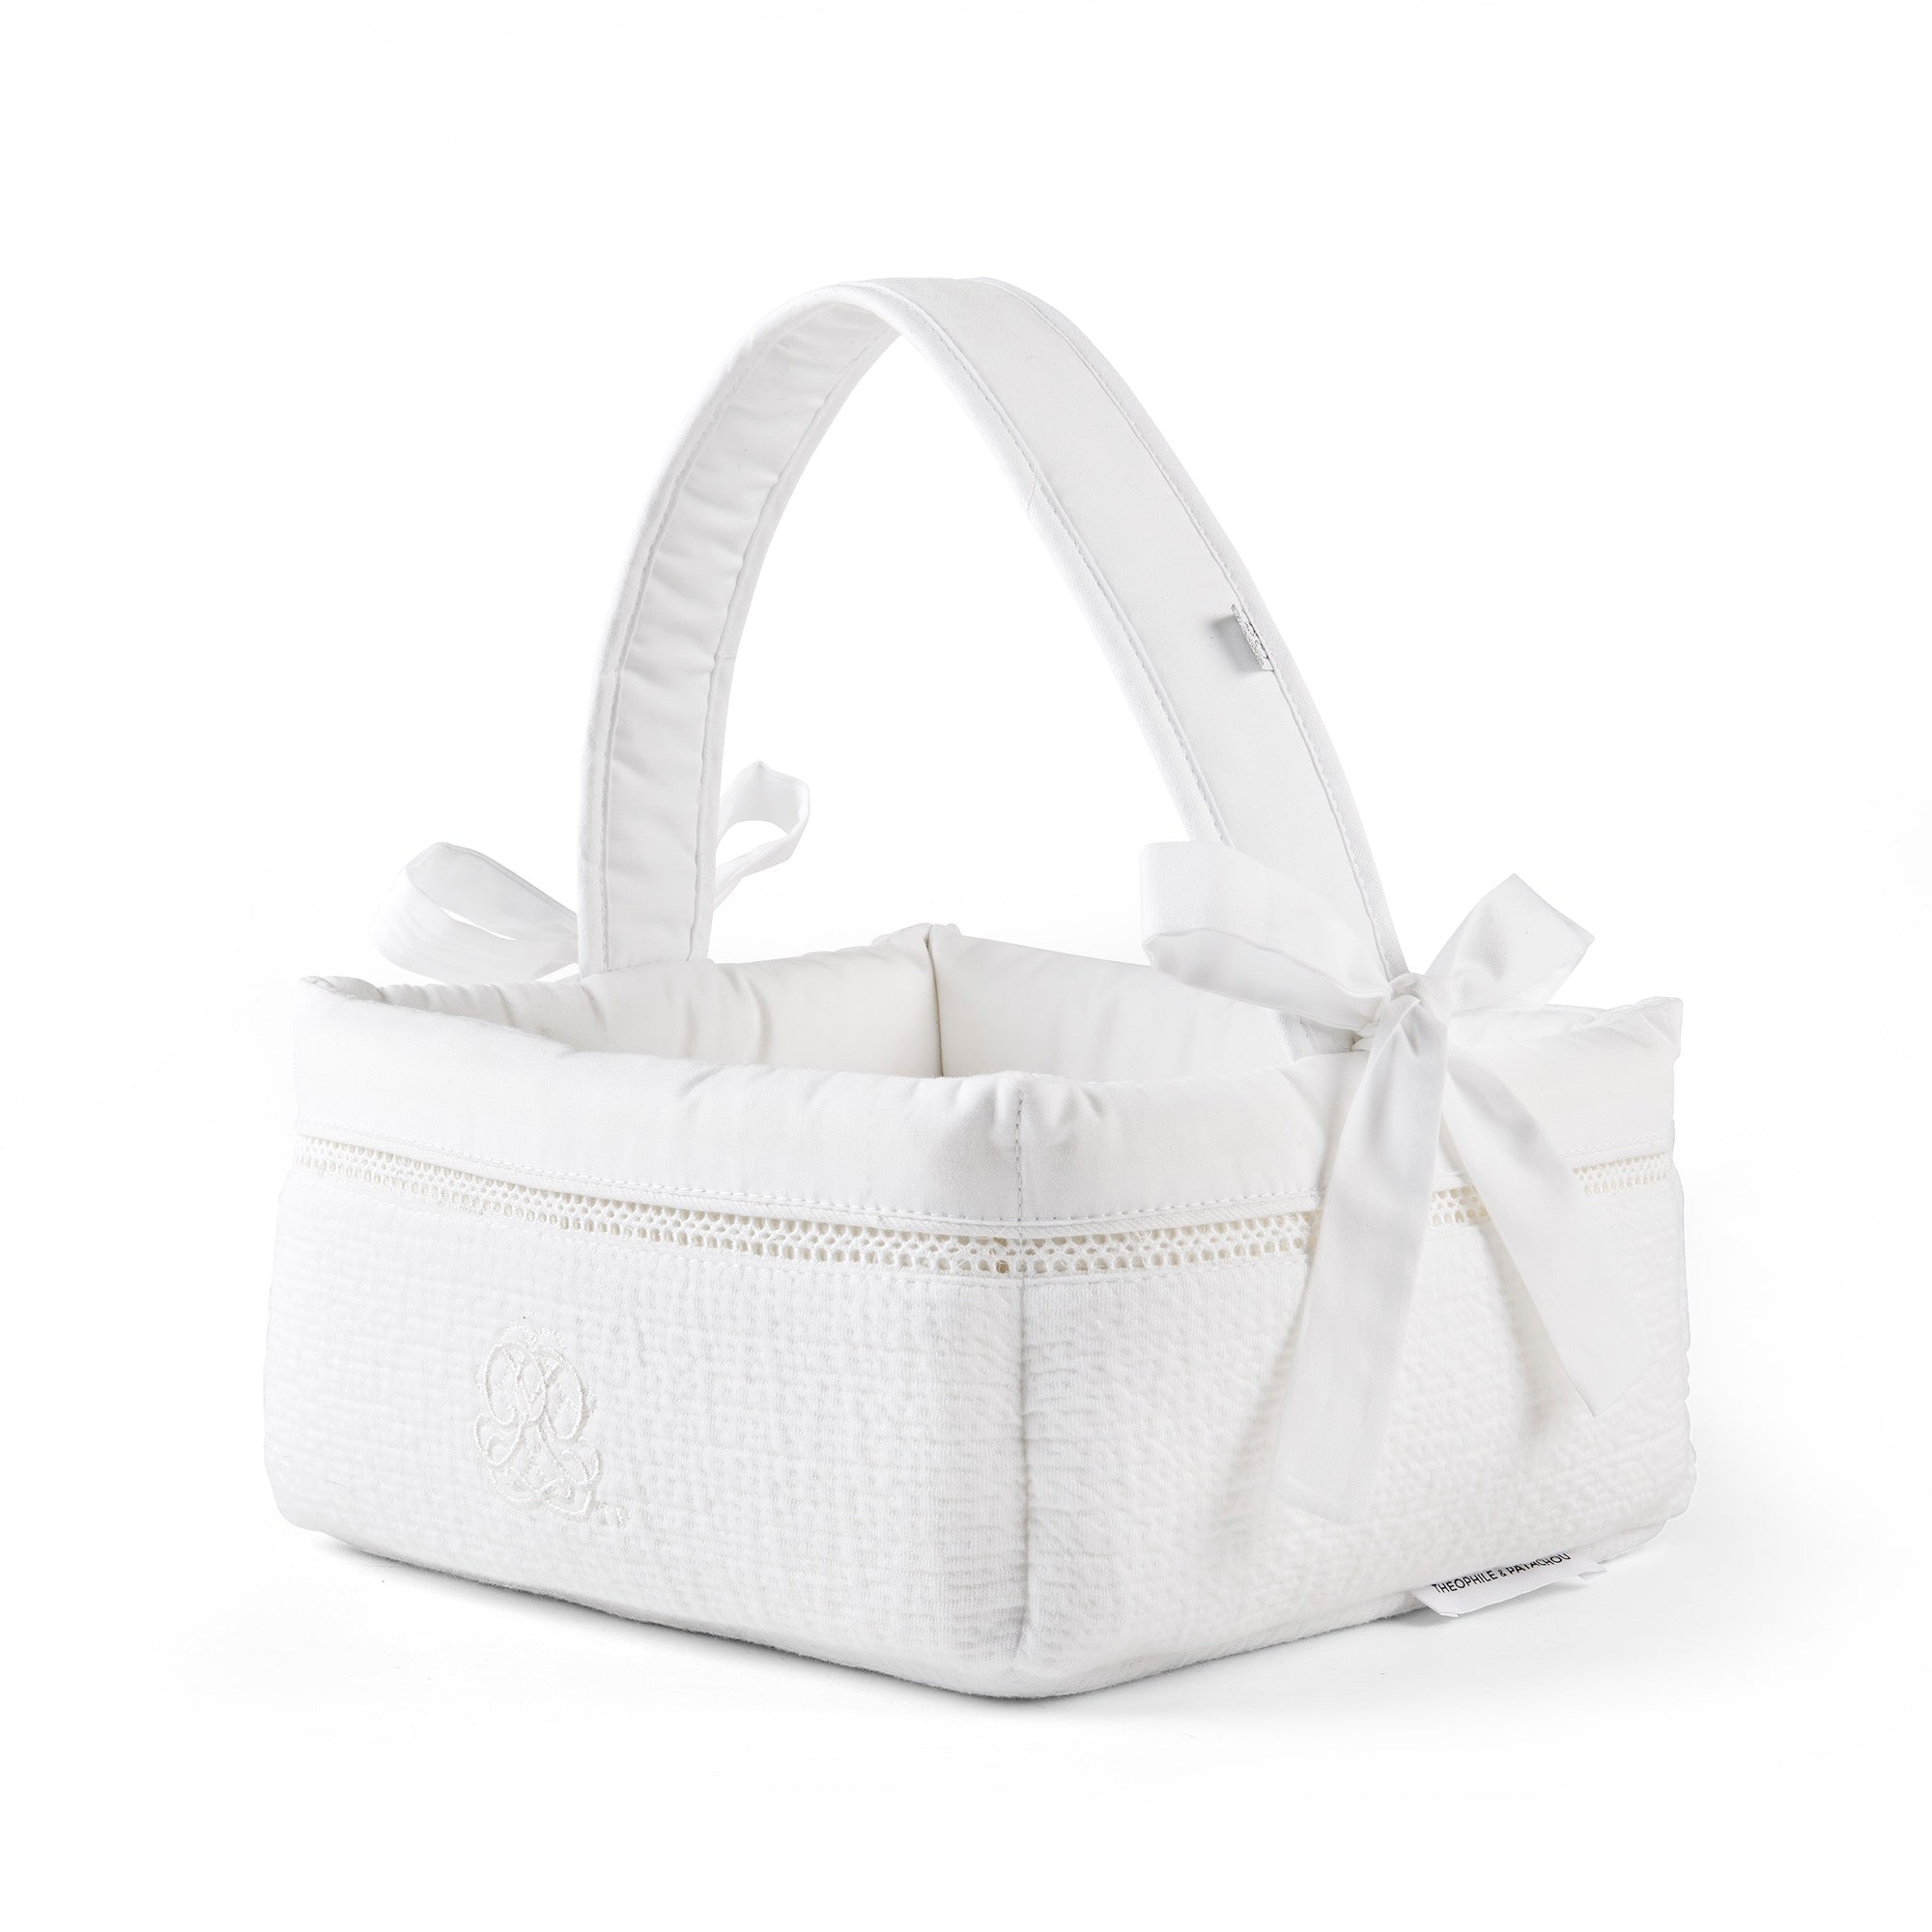 Theophile & Patachou Baby Toilet Basket - Cotton White